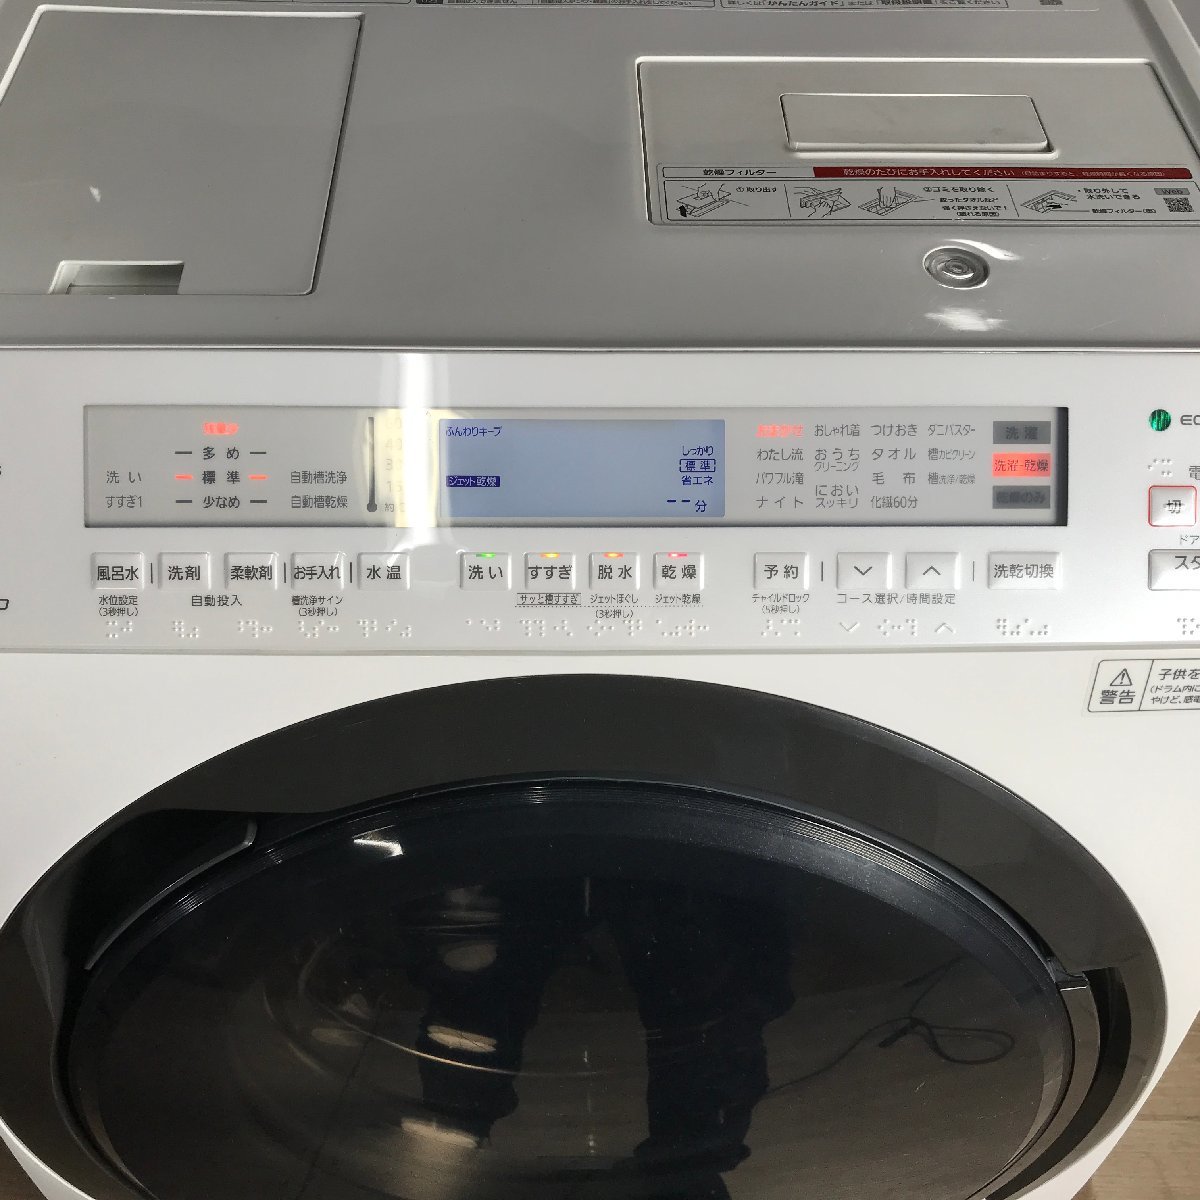 1202 Panasonic パナソニック ななめドラム式洗濯乾燥機 NA-VX800BR 2021年製 右開き 洗濯11kg 乾燥6kg クリスタルホワイト 洗濯機の画像5